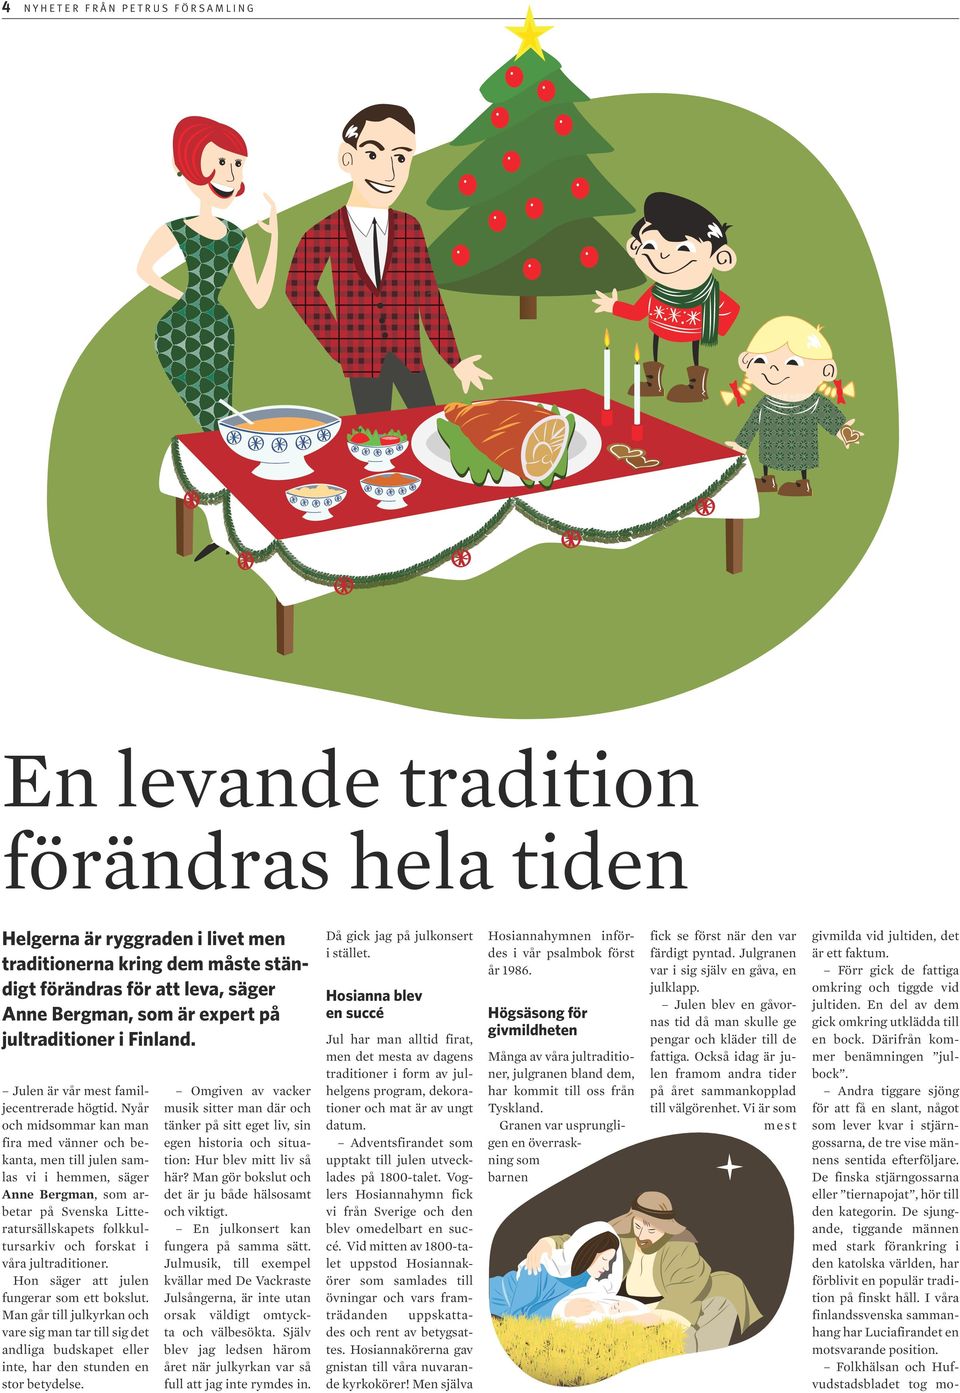 Nyår och midsommar kan man fira med vänner och bekanta, men till julen samlas vi i hemmen, säger Anne Bergman, som arbetar på Svenska Litteratursällskapets folkkultursarkiv och forskat i våra